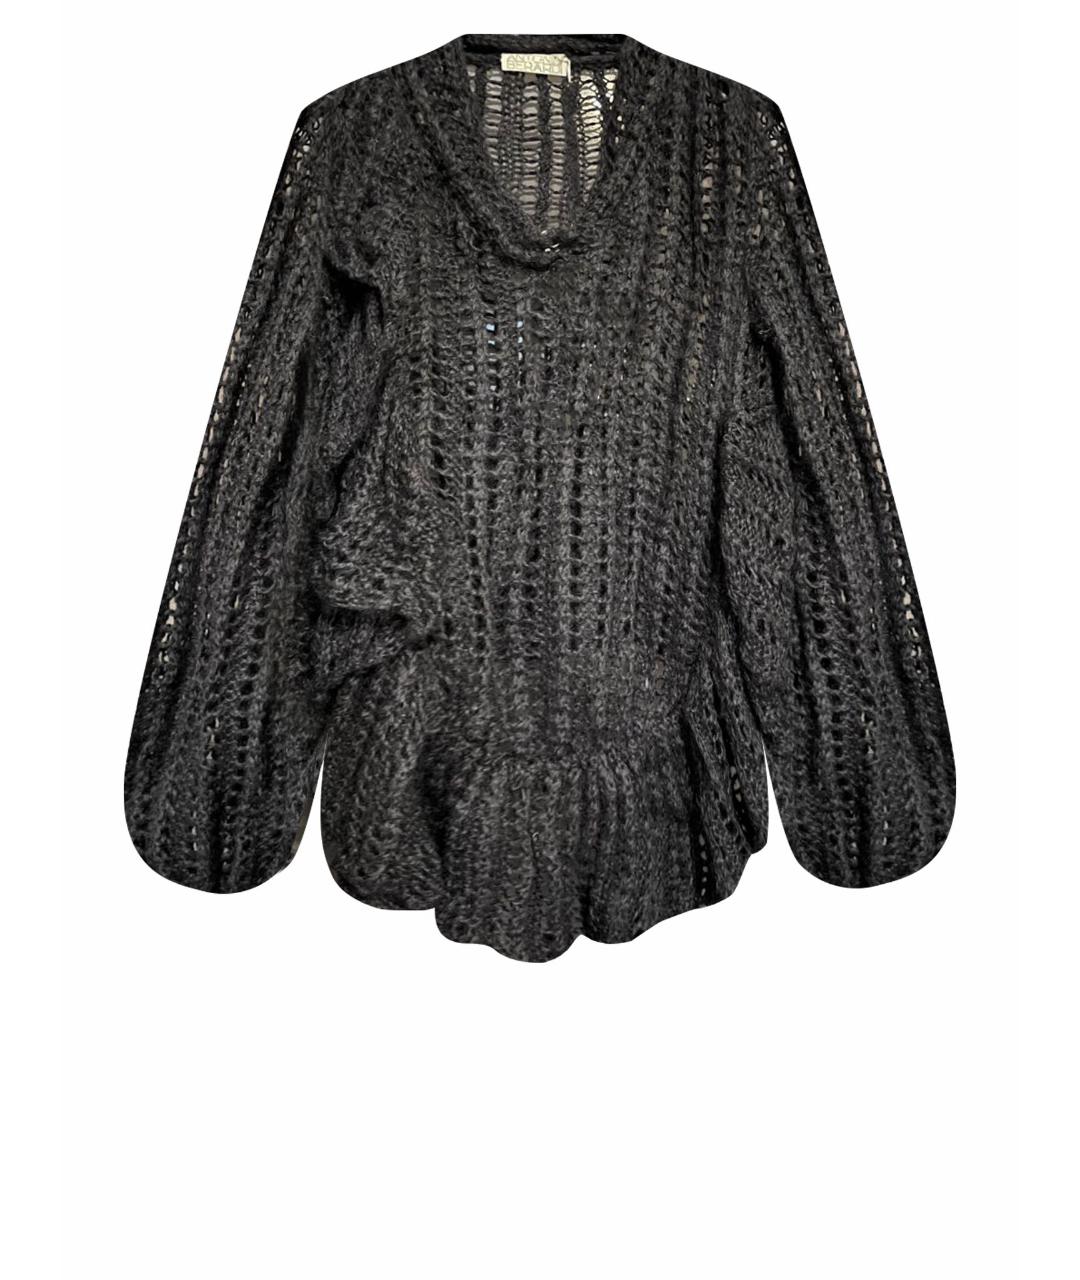 ANTONIO BERARDI Черный шерстяной джемпер / свитер, фото 1